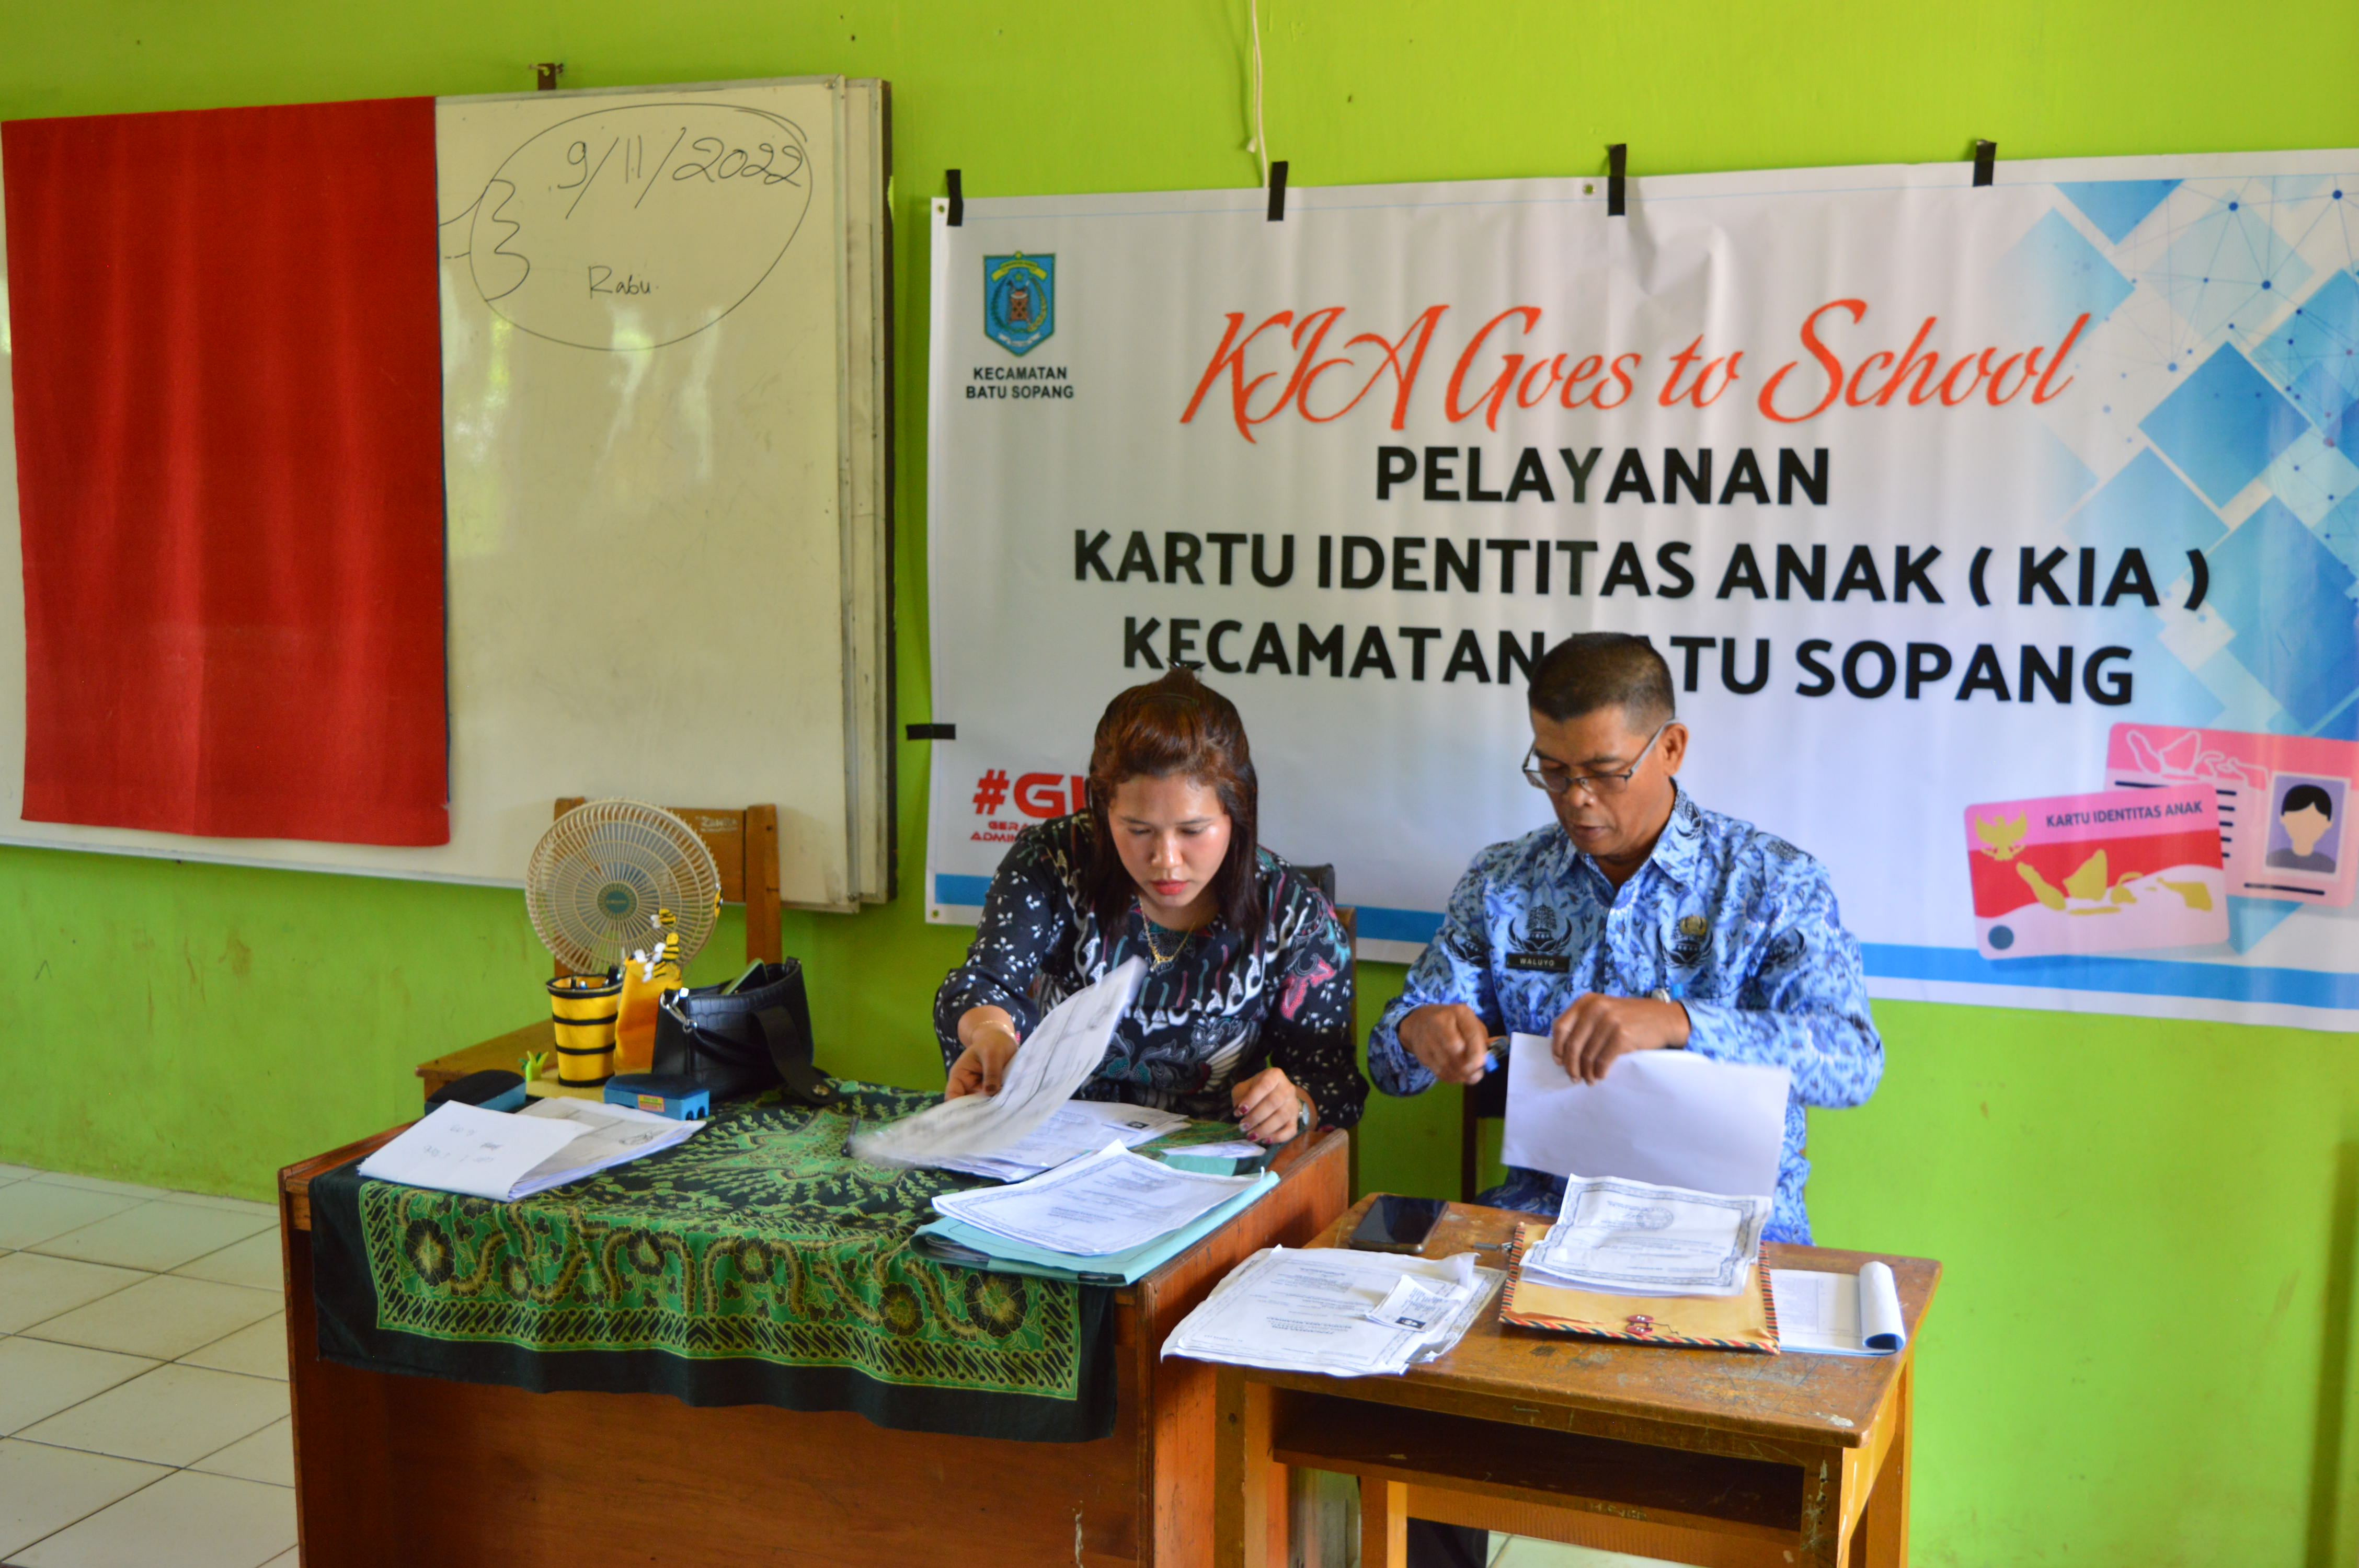 Pelayanan KIA Goes to School Kecamatan Batu Sopang